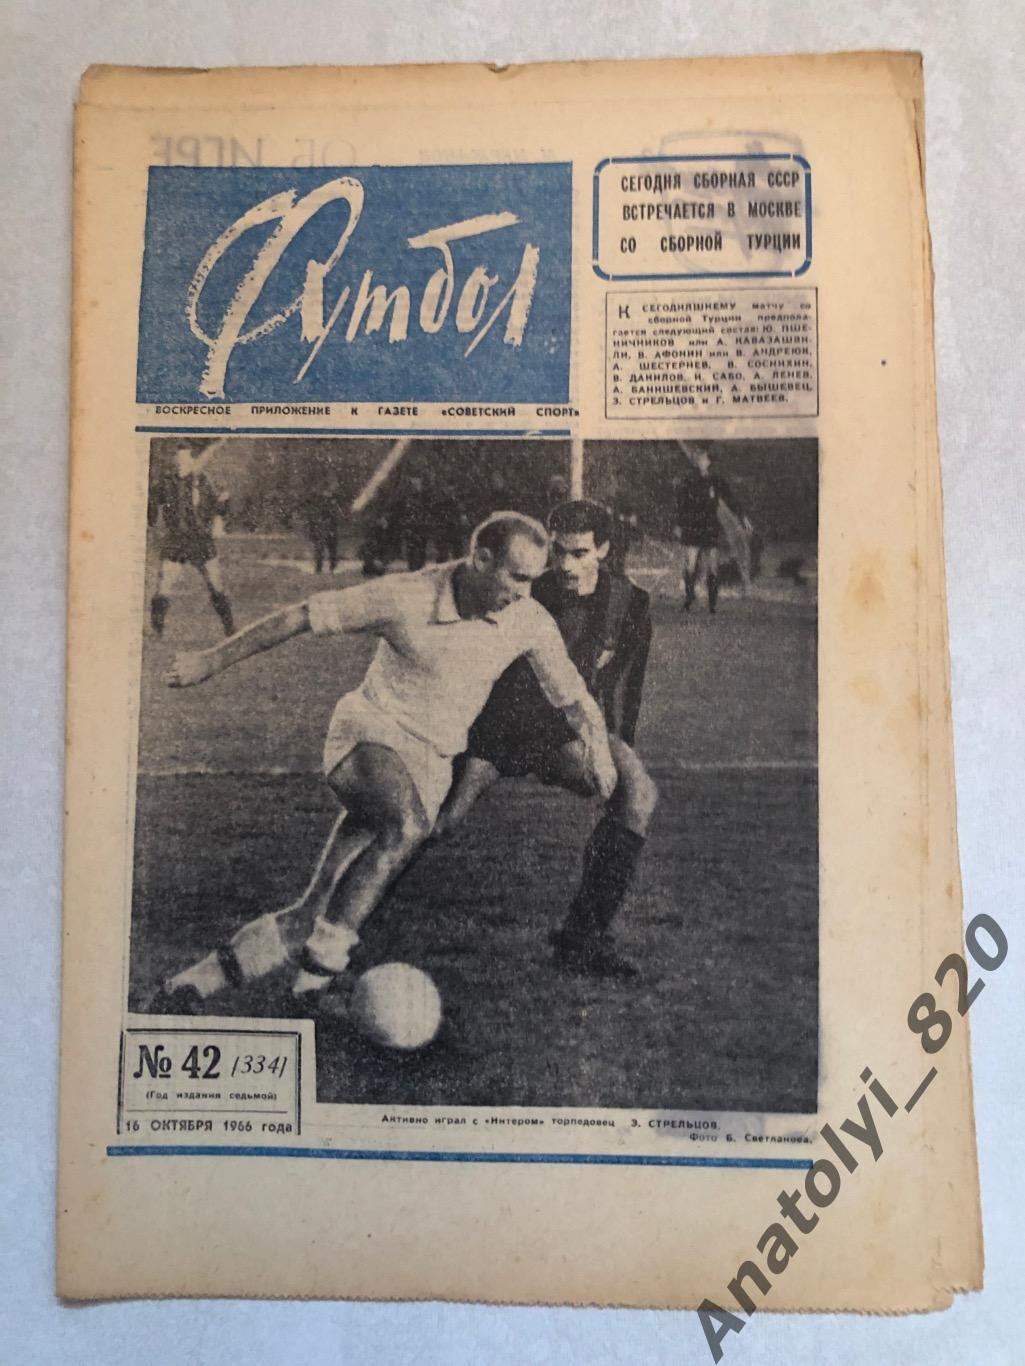 Еженедельник футбол номер 42 от 16.10.1966